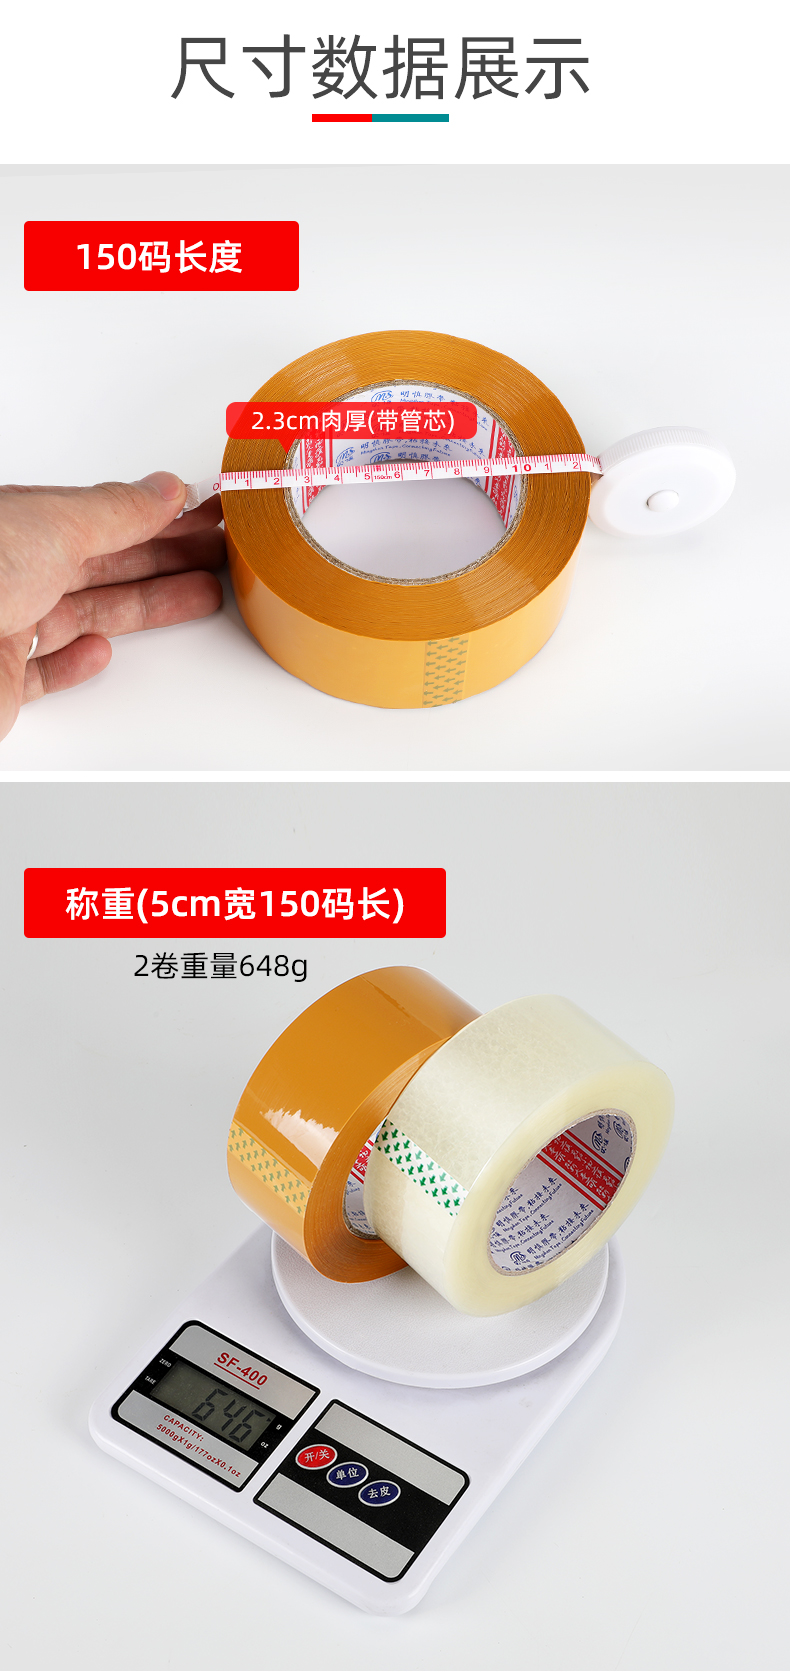 Mingshen băng trong suốt màu be Taobao thương mại điện tử niêm phong đóng gói băng niêm phong đa đặc điểm kỹ thuật tùy chọn dài 150 thước cuộn băng keo trong giá